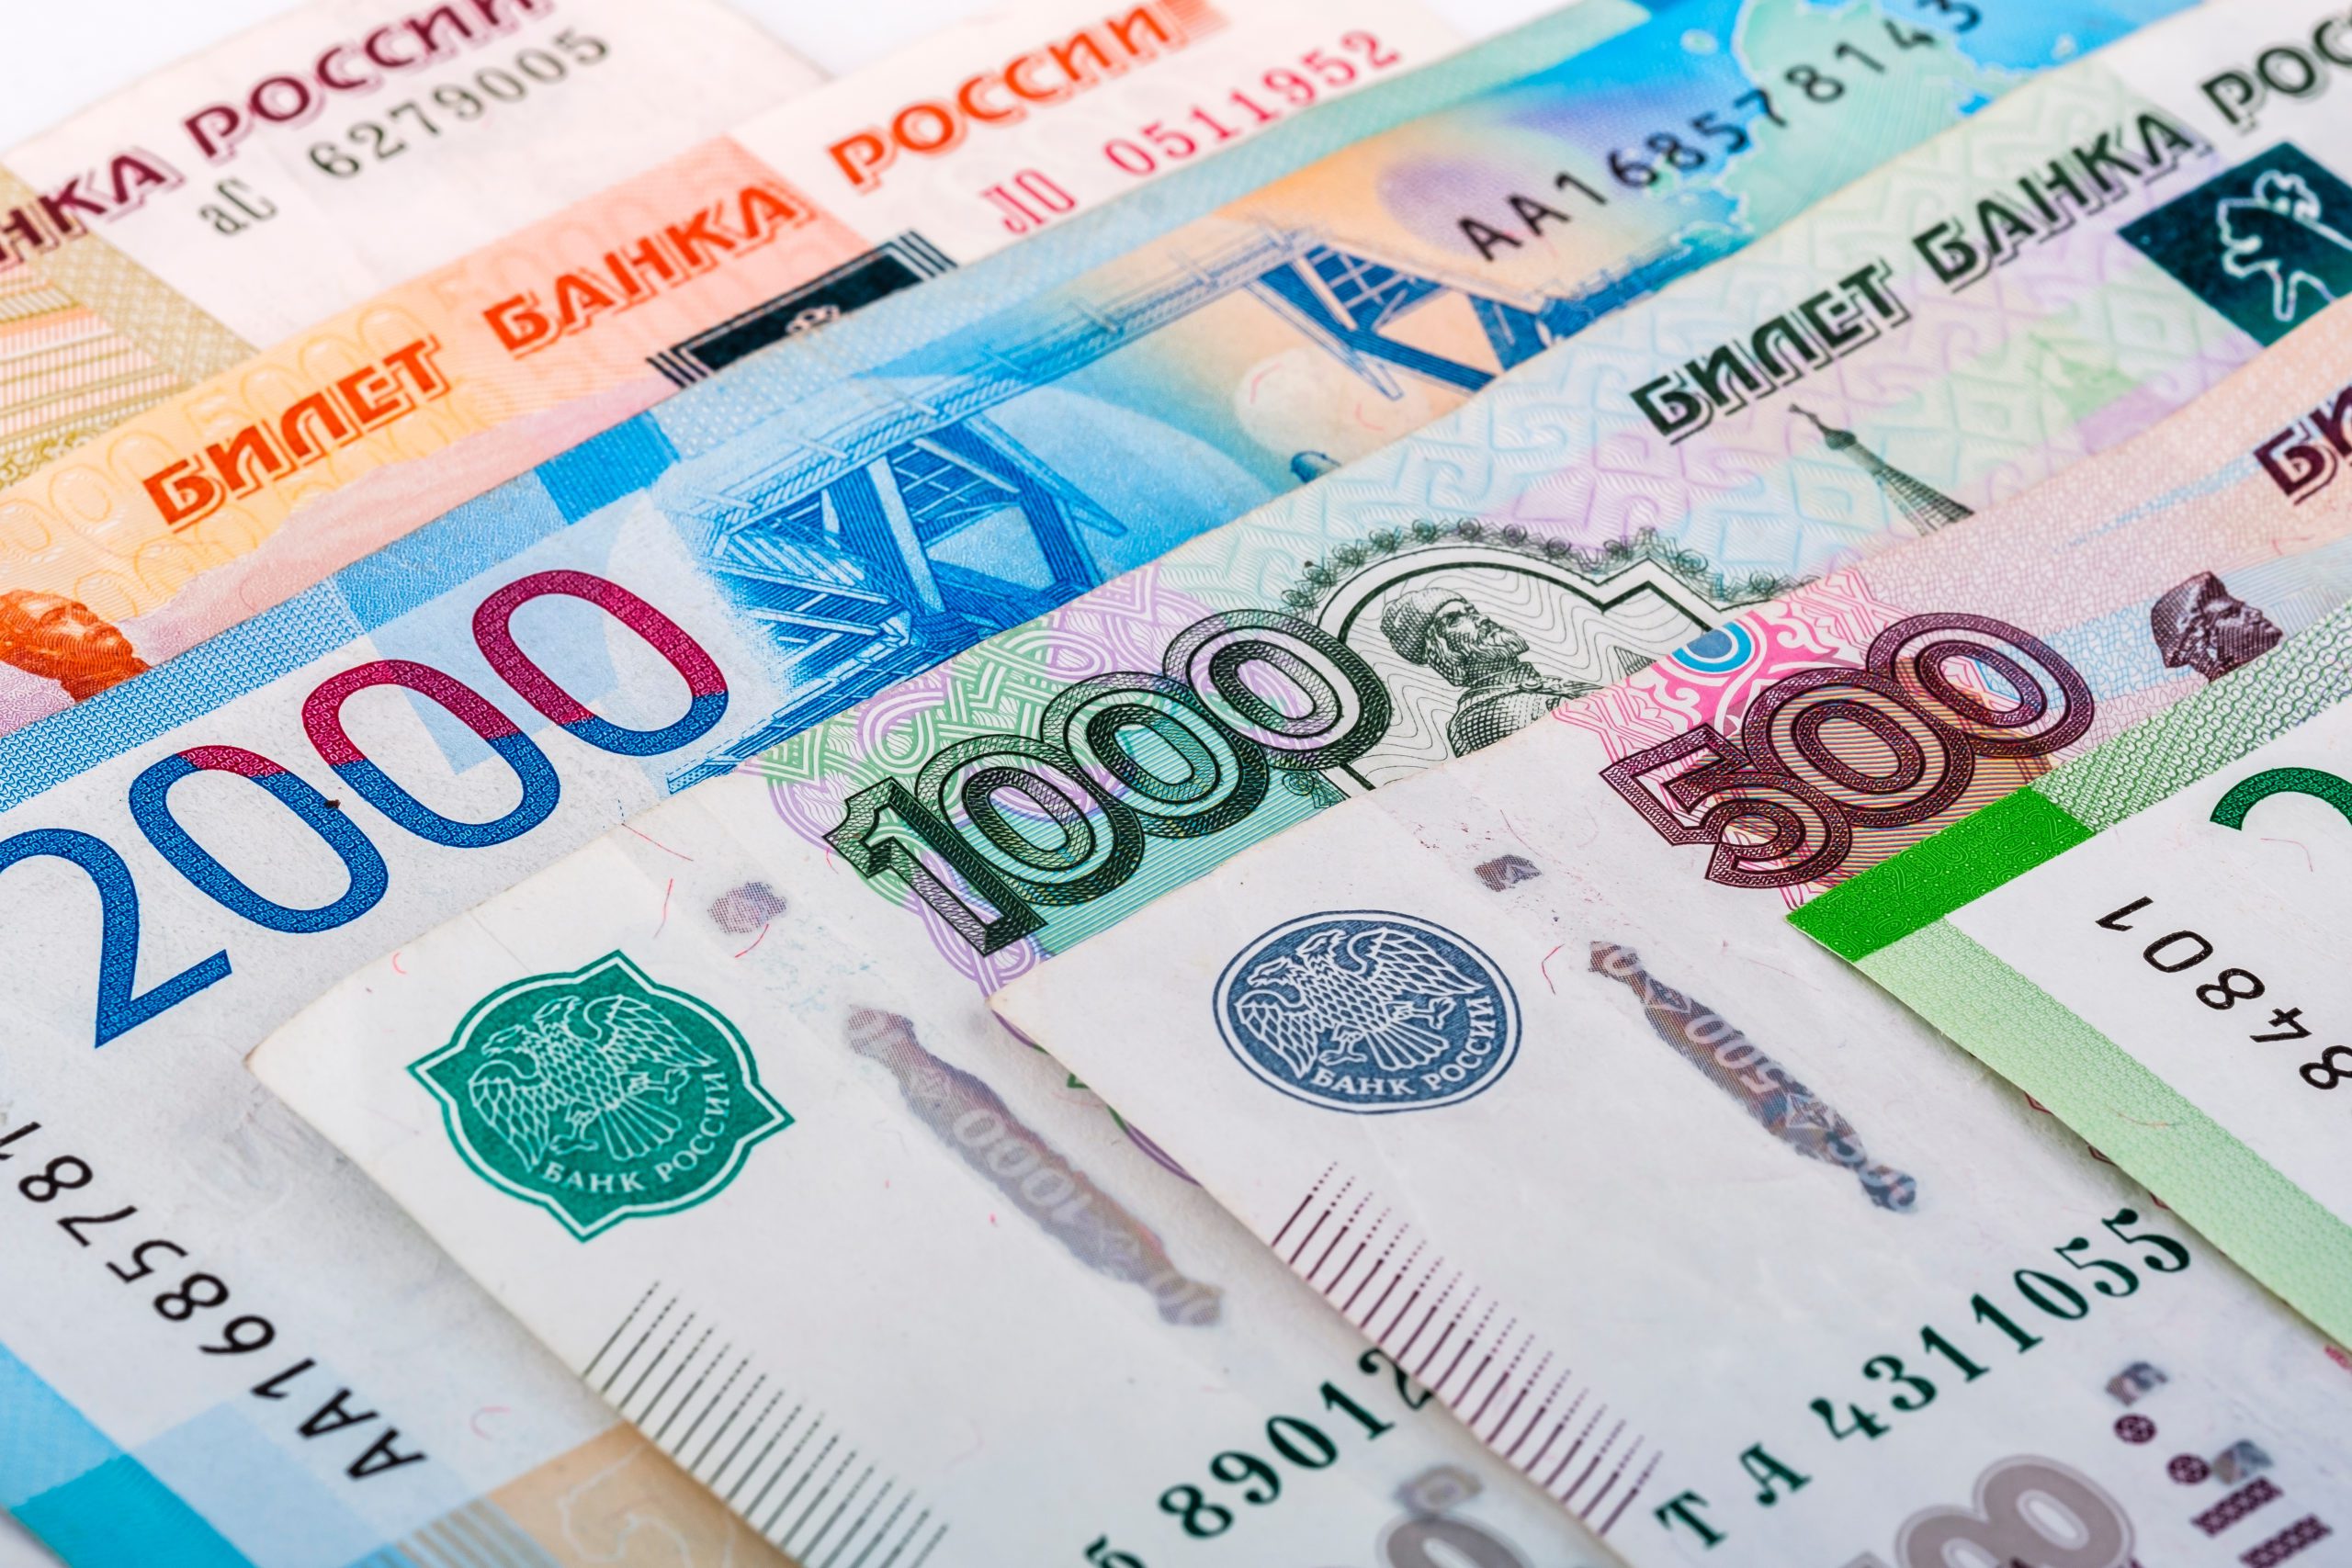 Various Russian bank notes